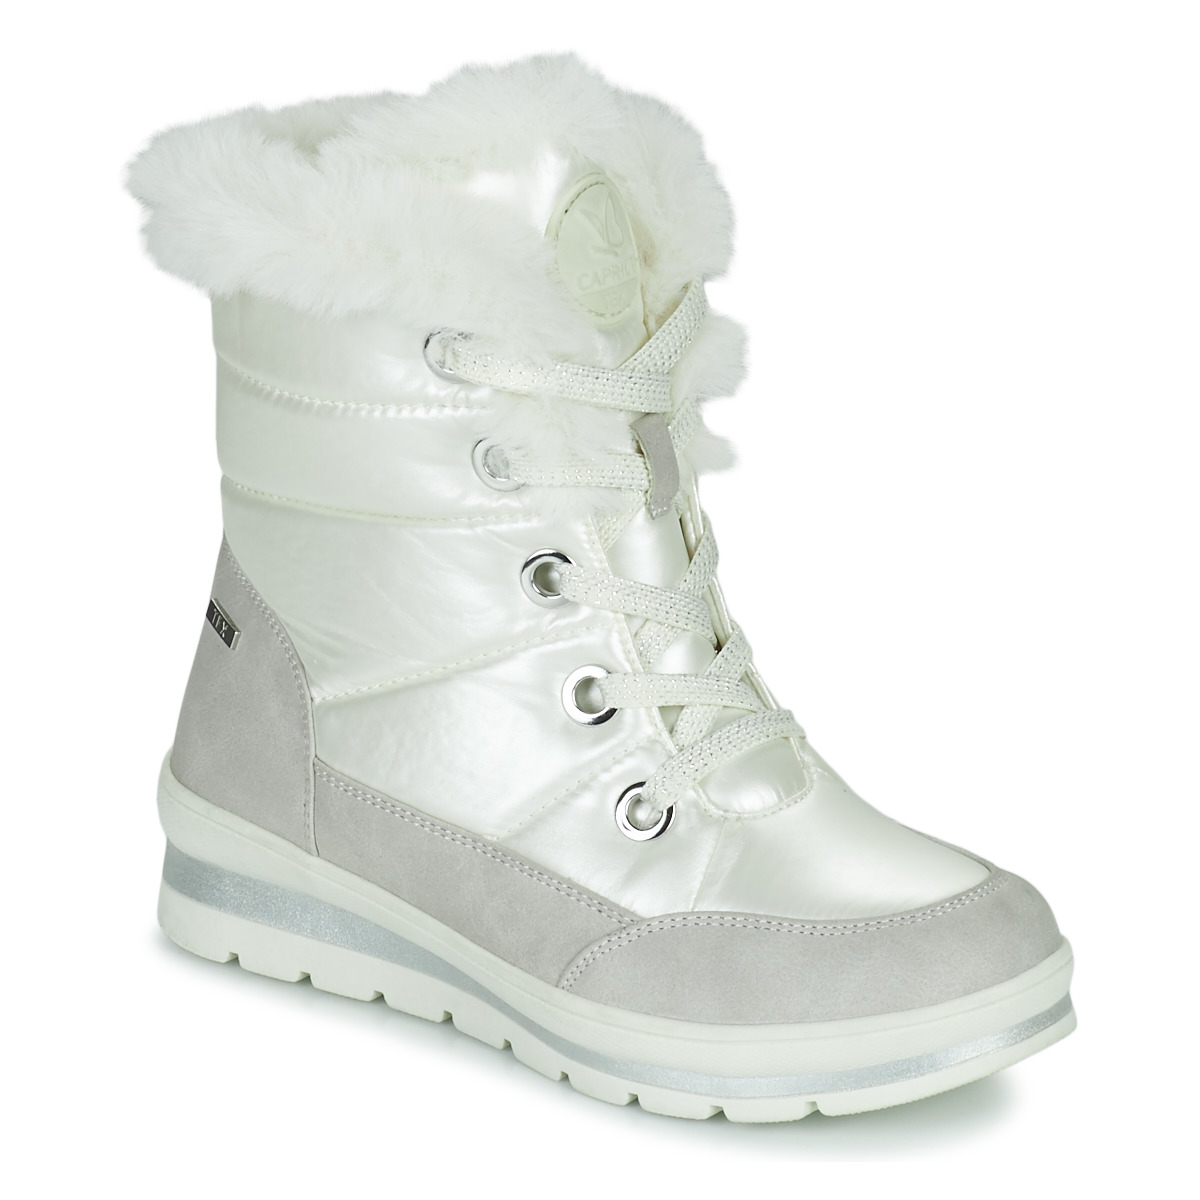 Chaussures Femme Bottes de neige Caprice 26226 